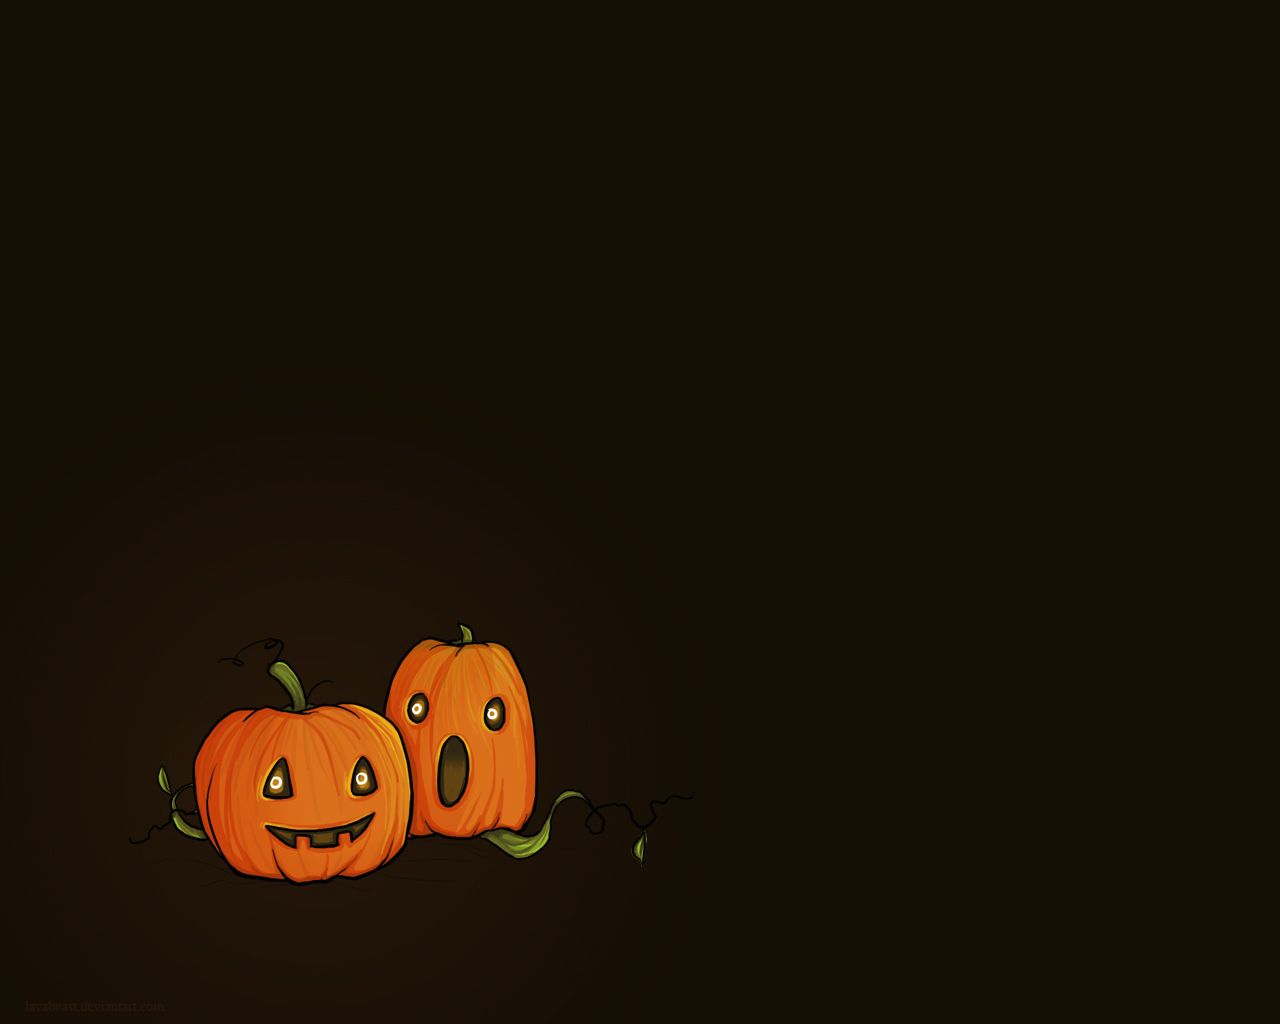 Cute Halloween Pumpkins Wallpaper